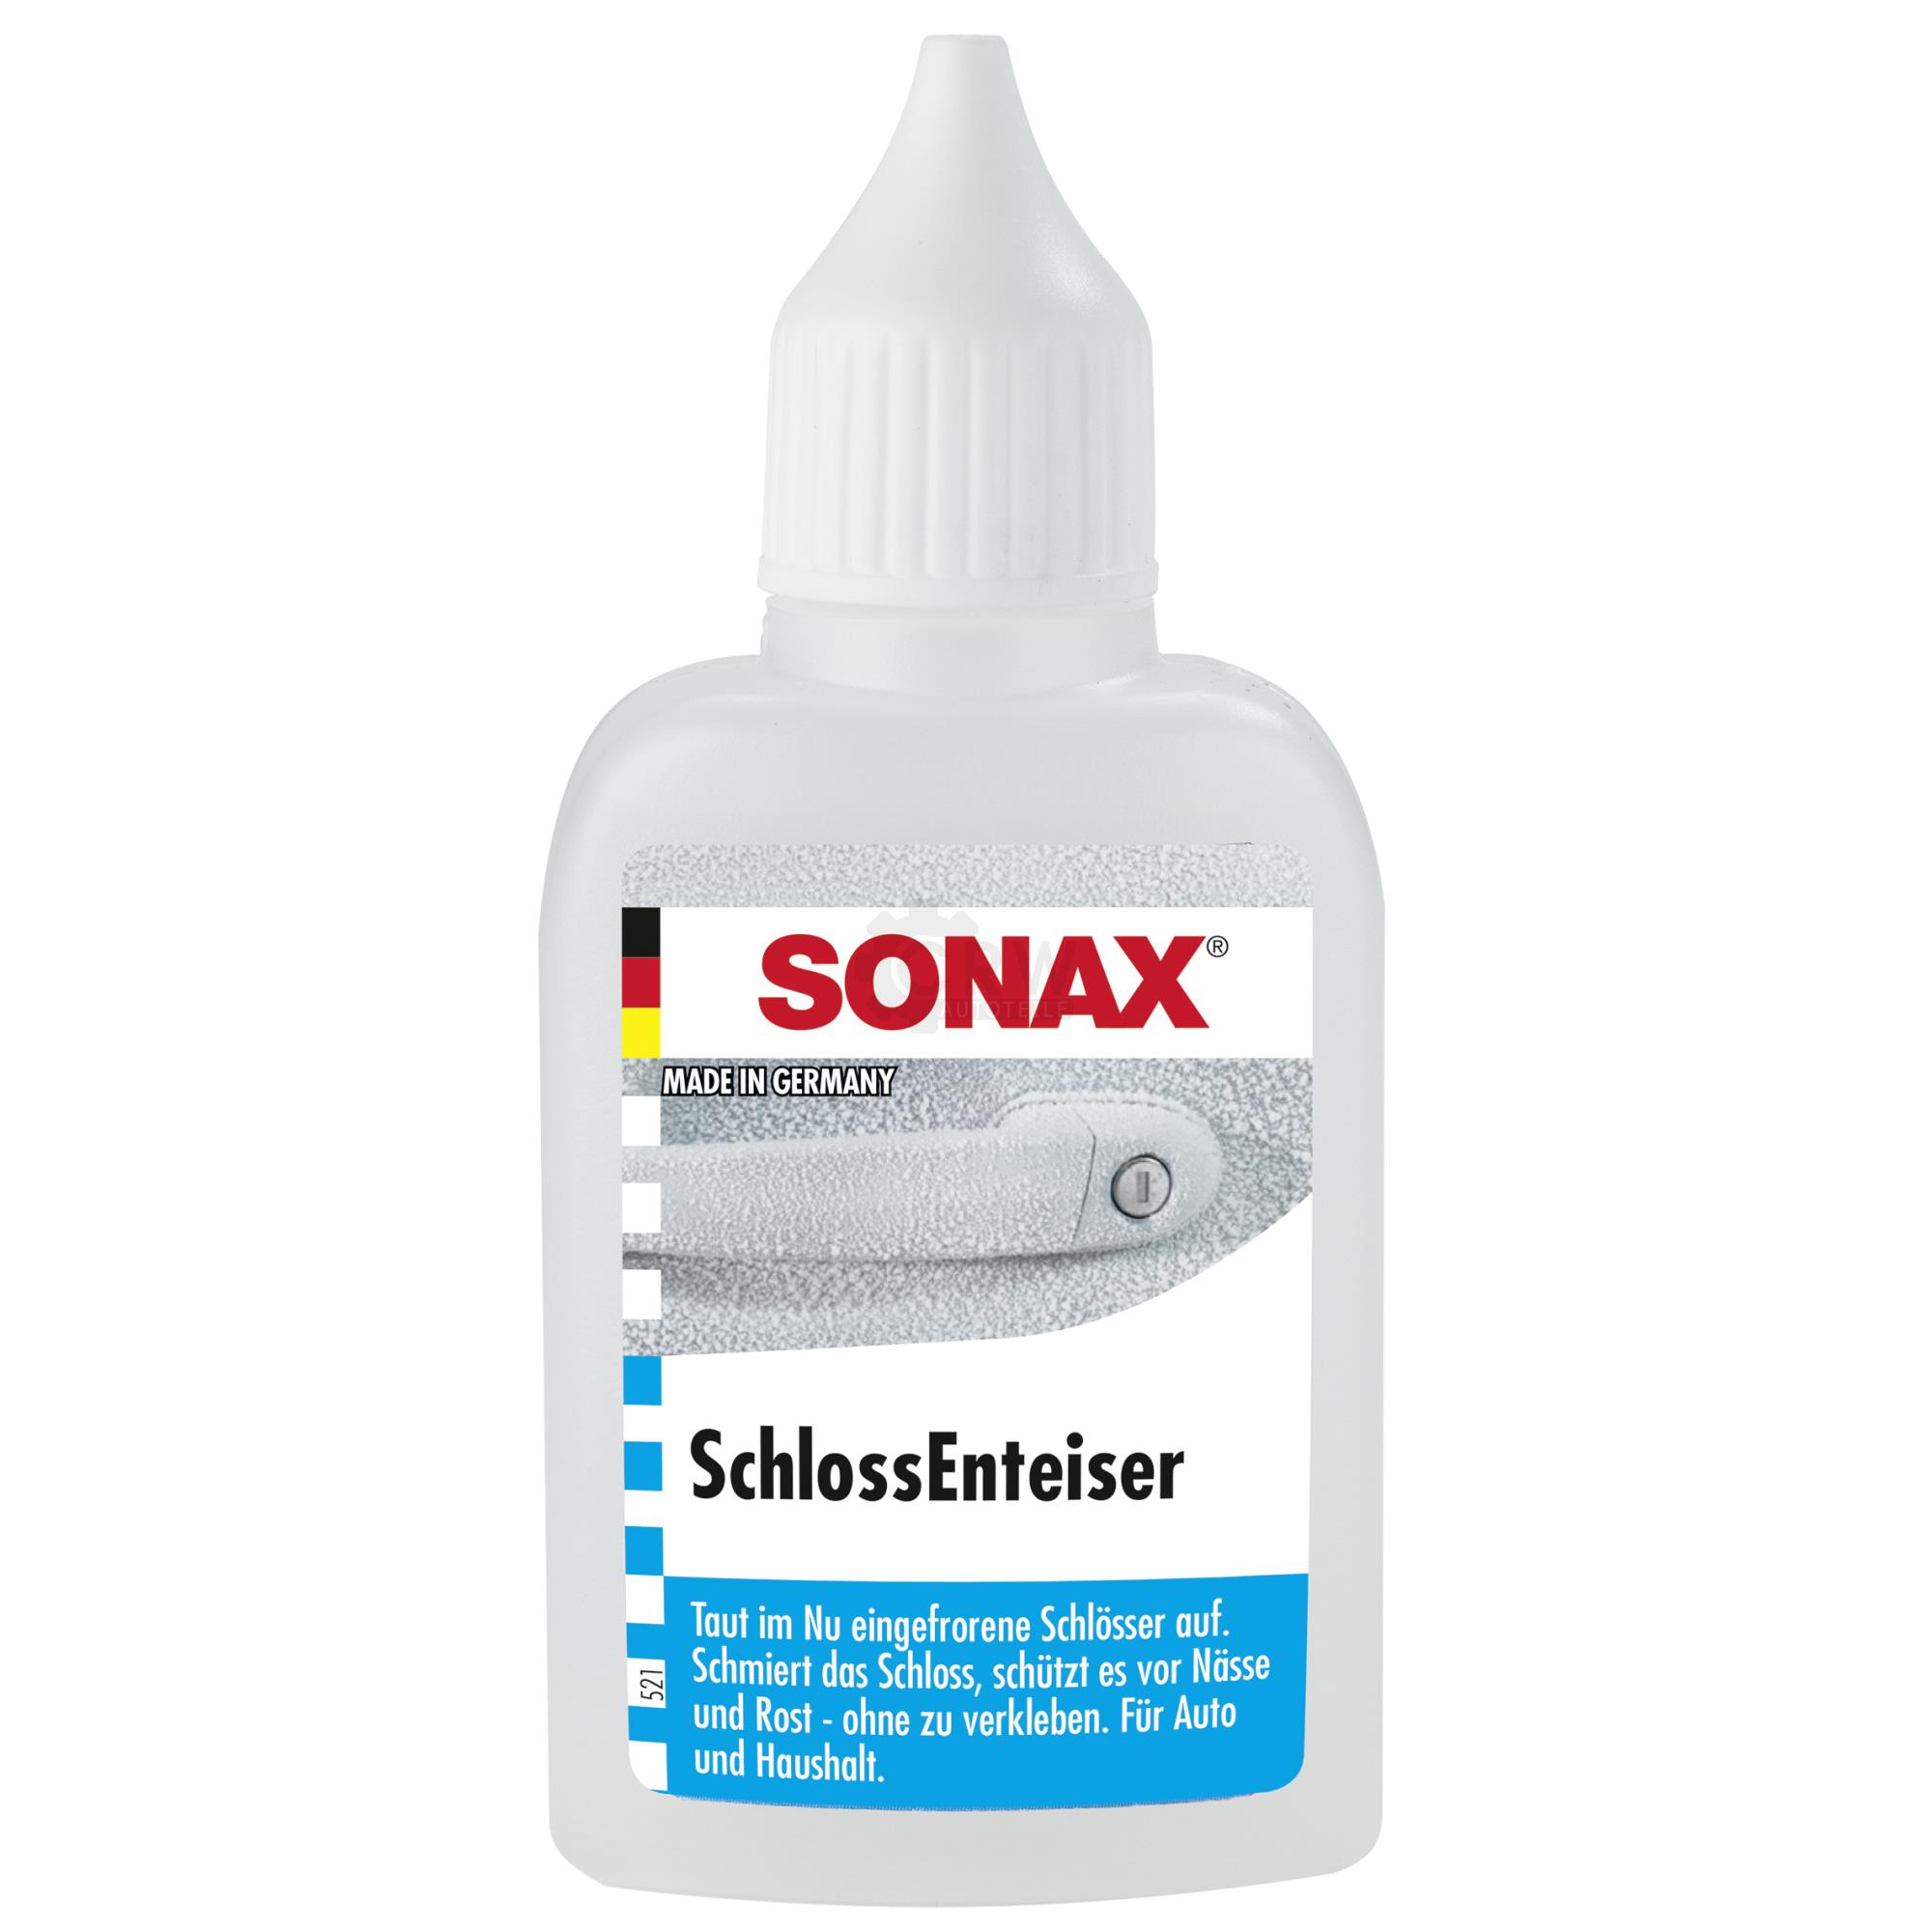 SONAX 03315410 SchlossEnteiser Rostschutz Pflege Schmierung 50 ml